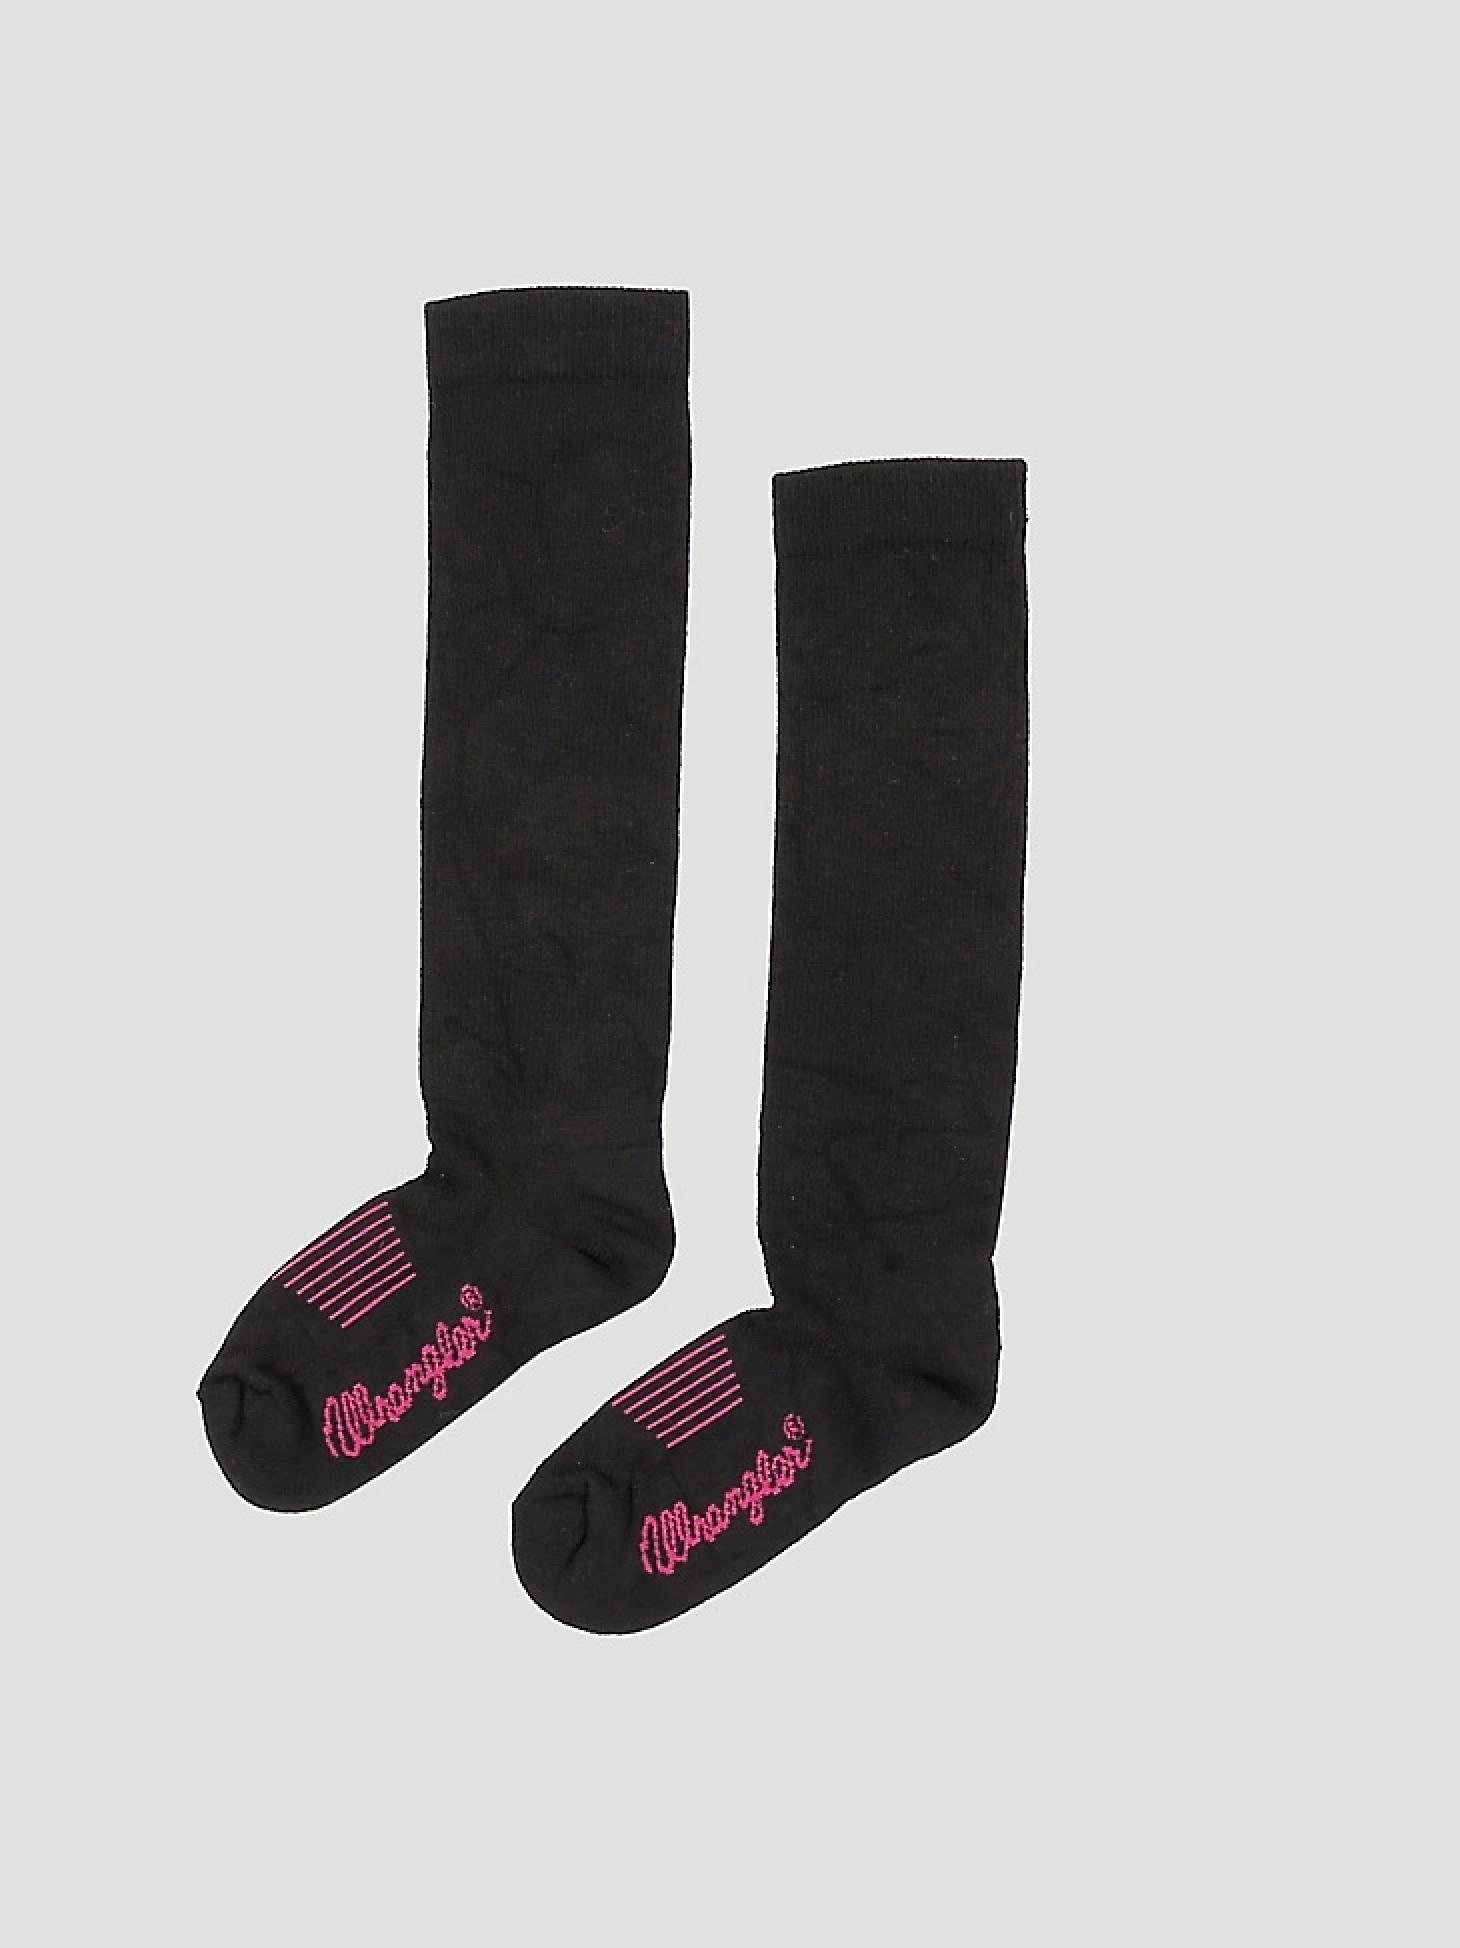 Wrangler Women's Western Boot Sock